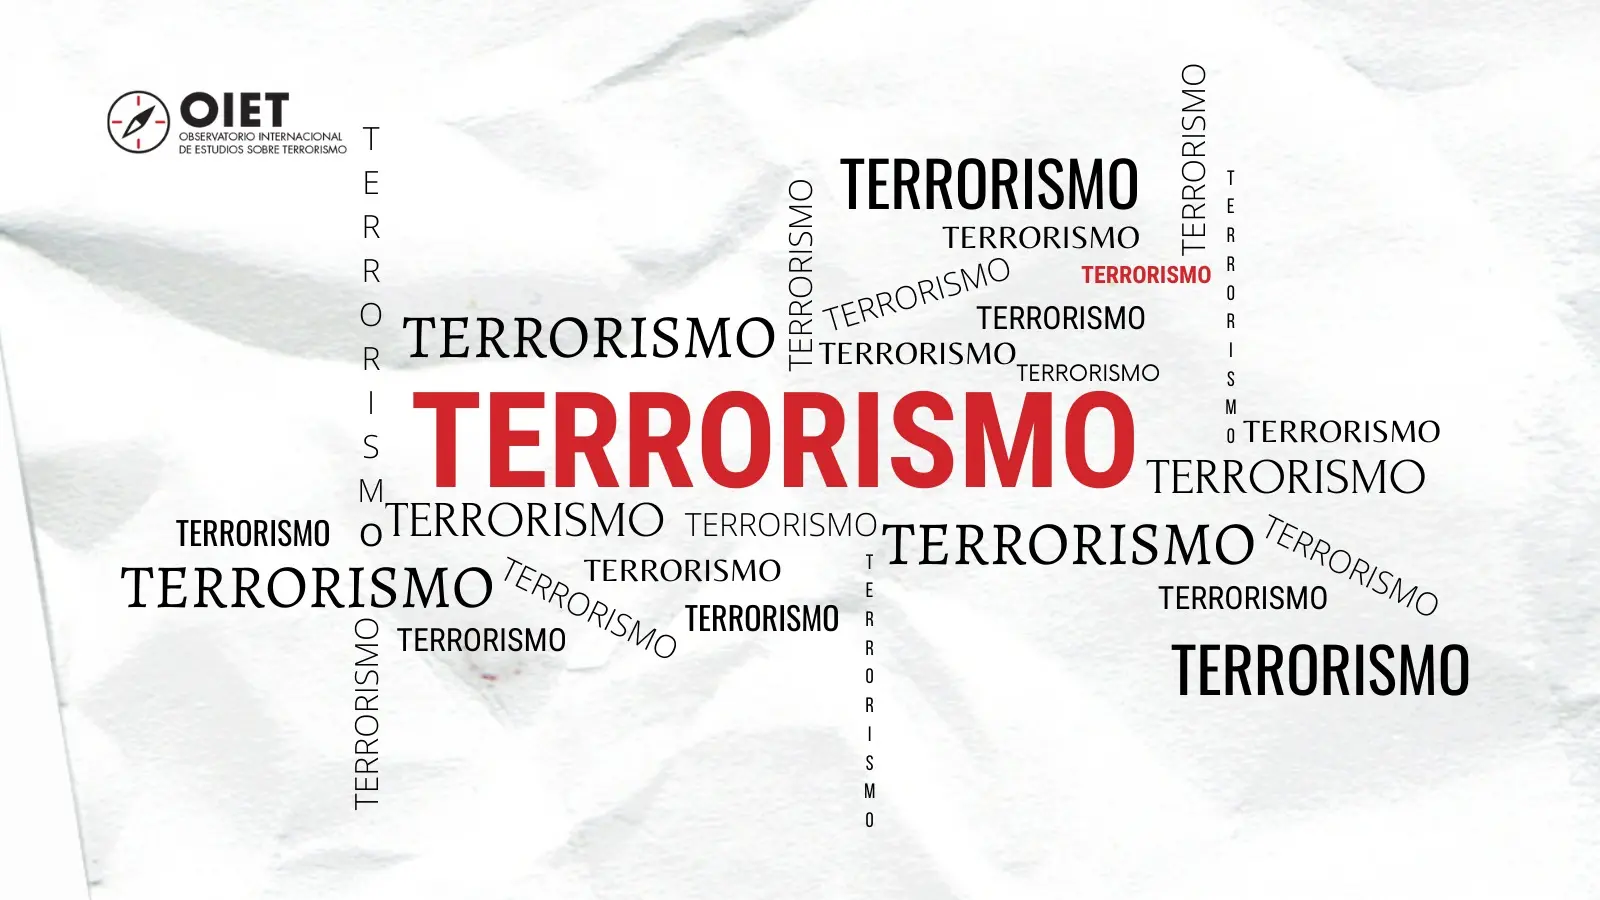 grupo de inteligencia informacion de terroristas - Qué grupo tiene más probabilidades de utilizar el terrorismo para lograr sus objetivos